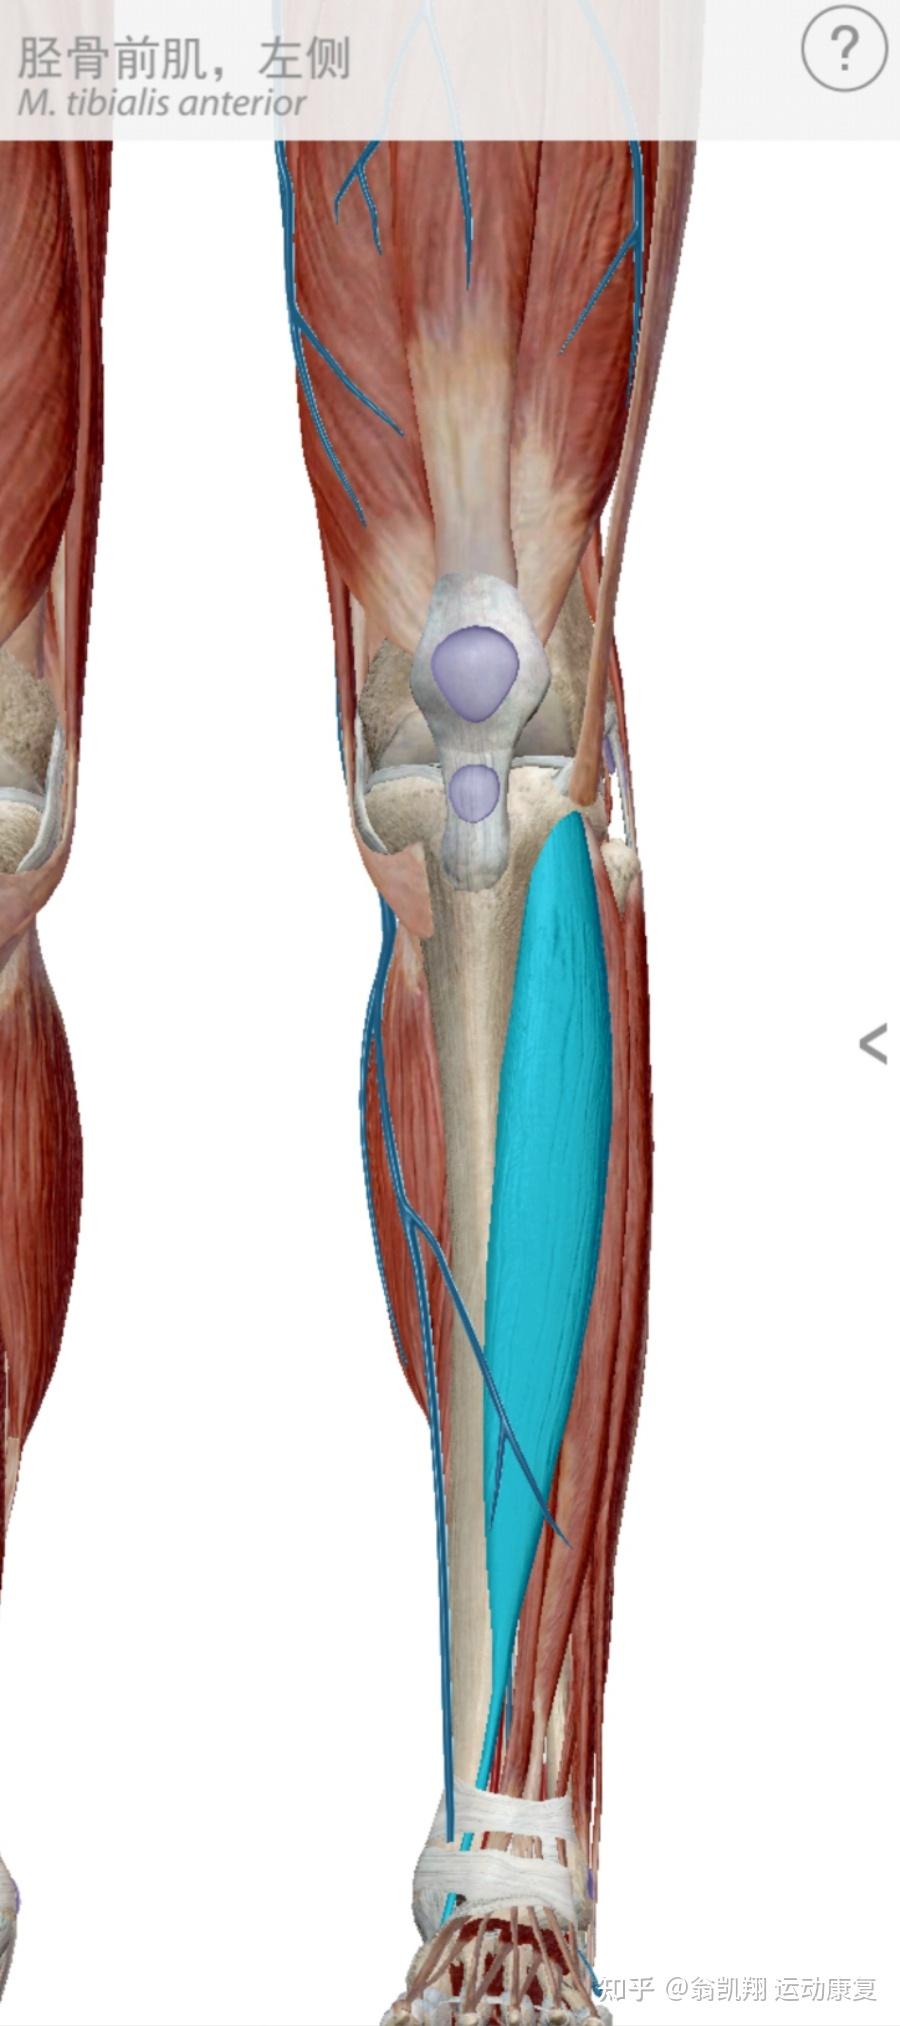 胫骨前肌肉解剖图图片